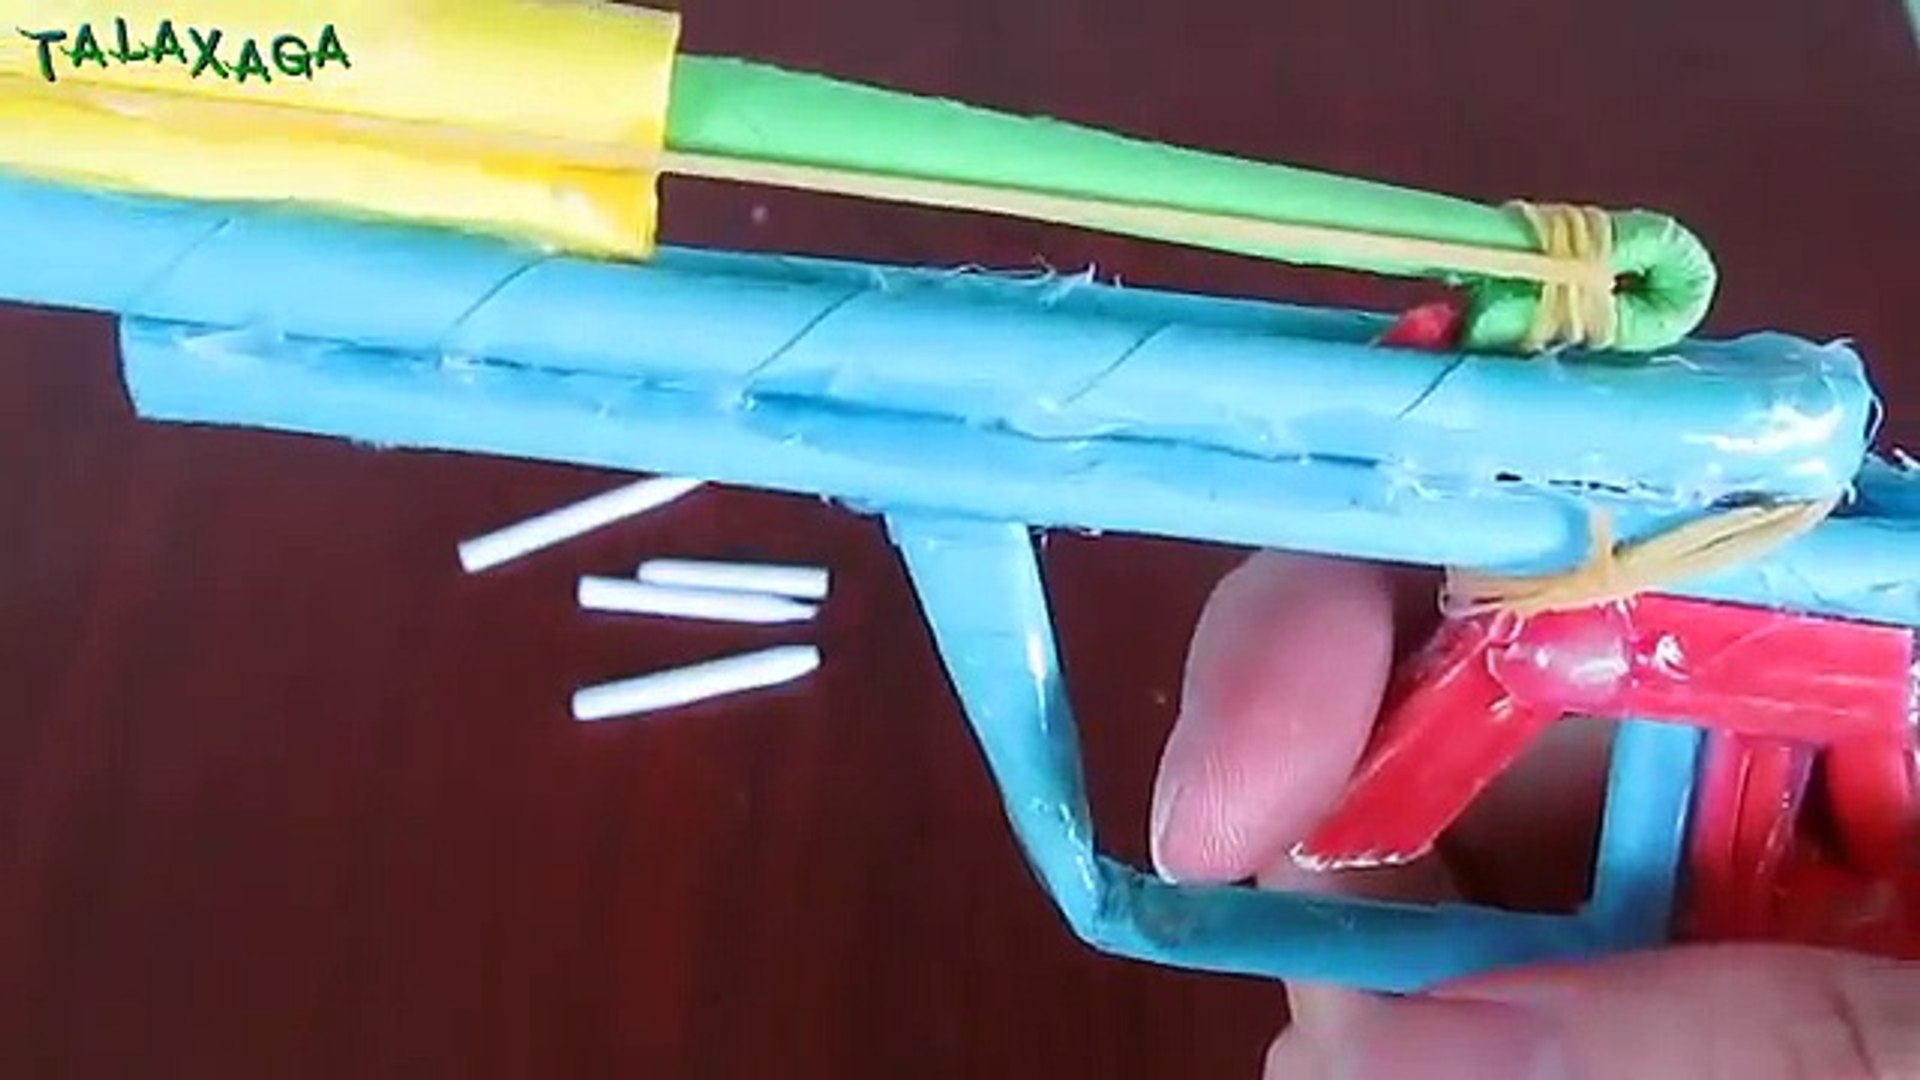 Cómo hacer una pistola de papel que dispara con balas de papel - Pistola de  juguete - video Dailymotion